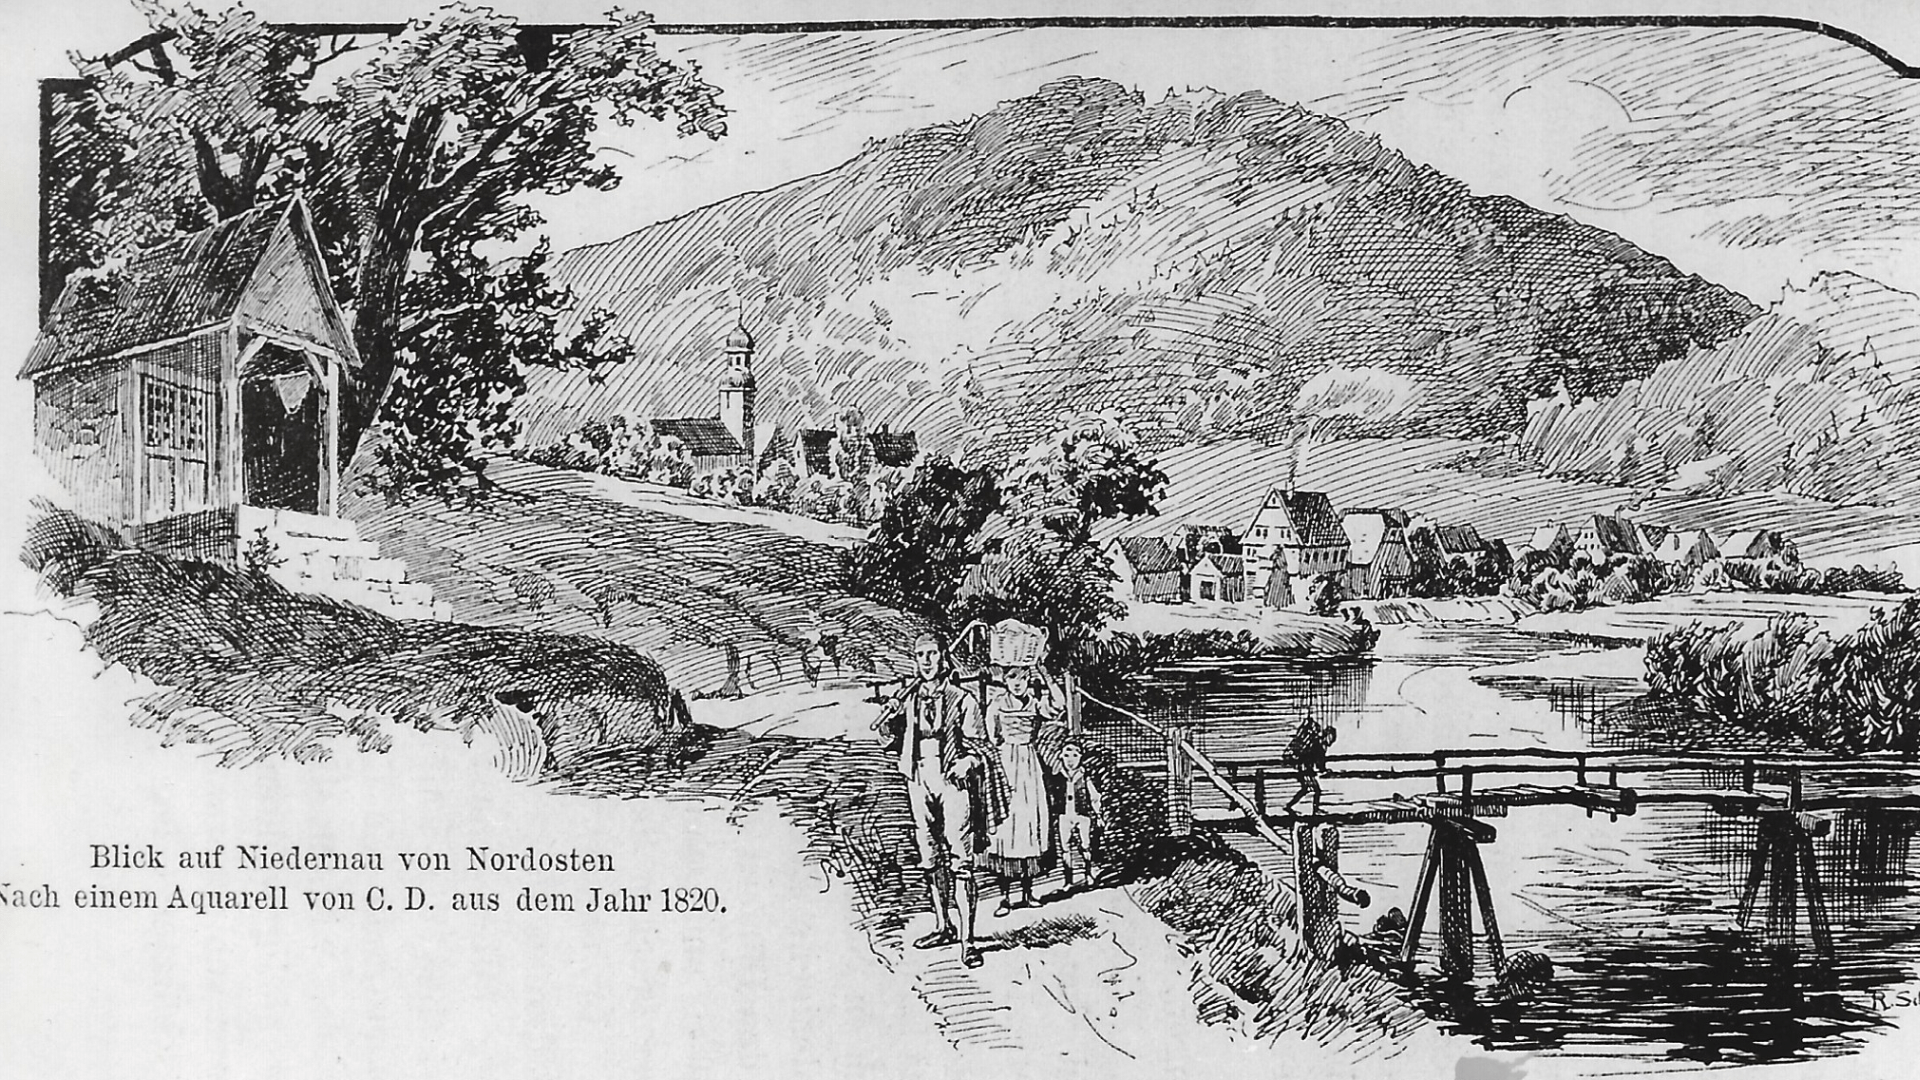 Blick auf Bad Niedernau -Aquarell um 1820  - Foto: :  Archiv Arme Schulschwestern